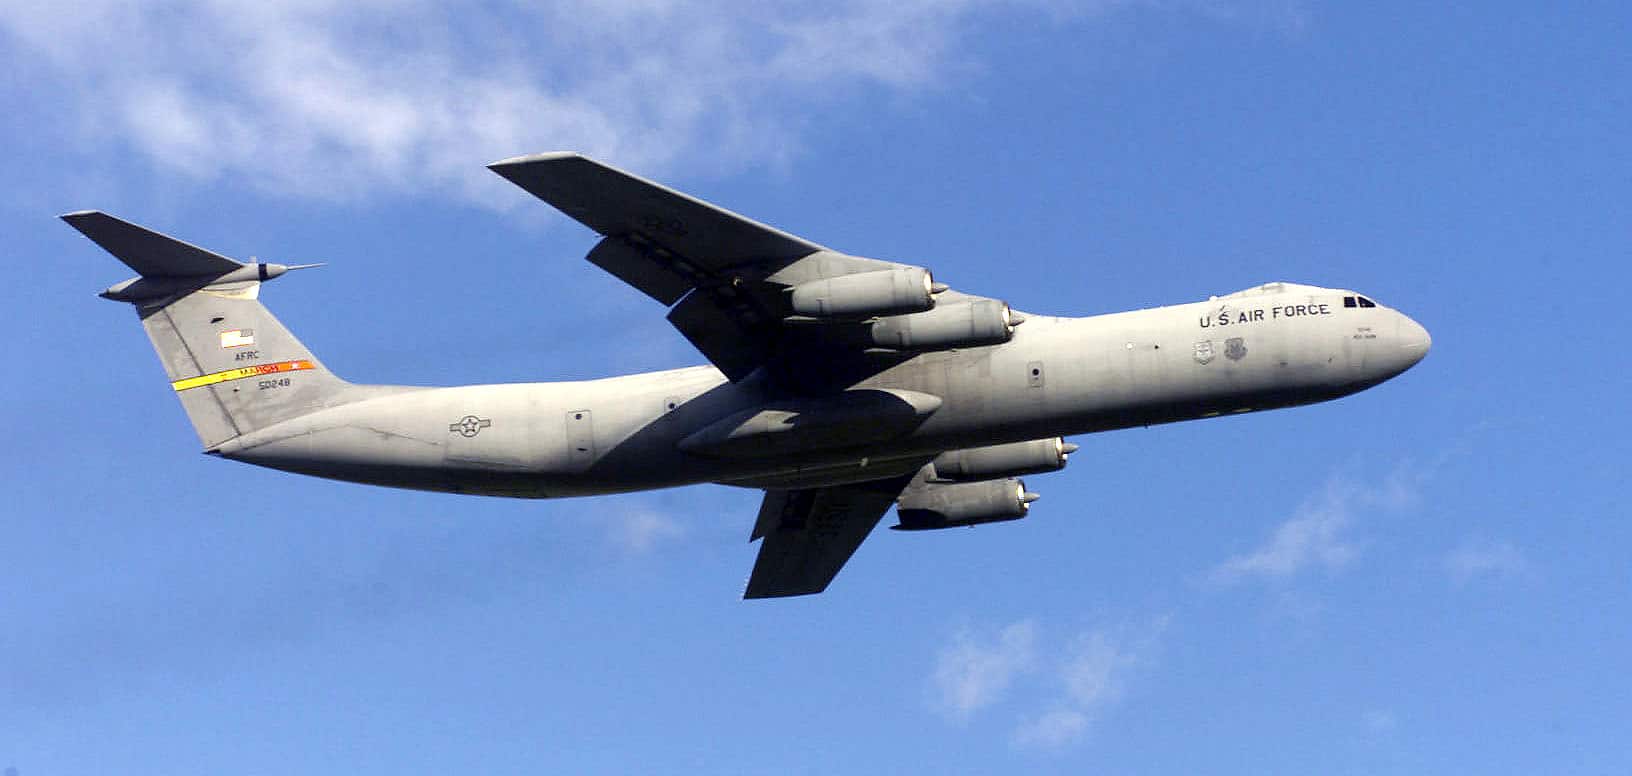 Le Lockheed C-141 Starlifter, avion de transport militaire américain en service de 1965 à 2006.
Crédit : Wikicommons